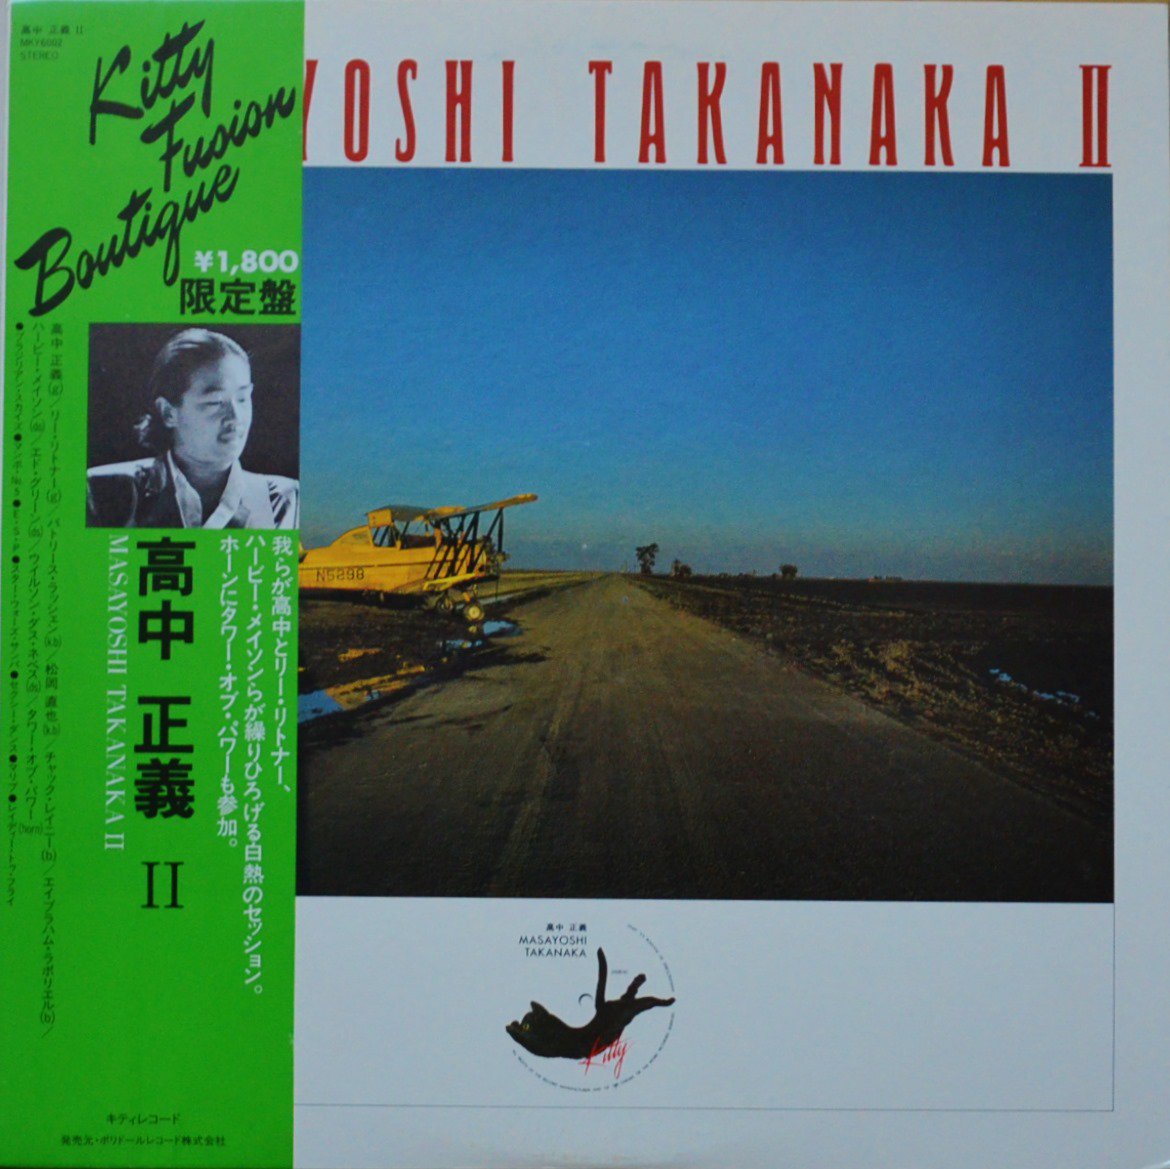 高中正義 MASAYOSHI TAKANAKA / MASAYOSHI TAKANAKA II (LP) - HIP 